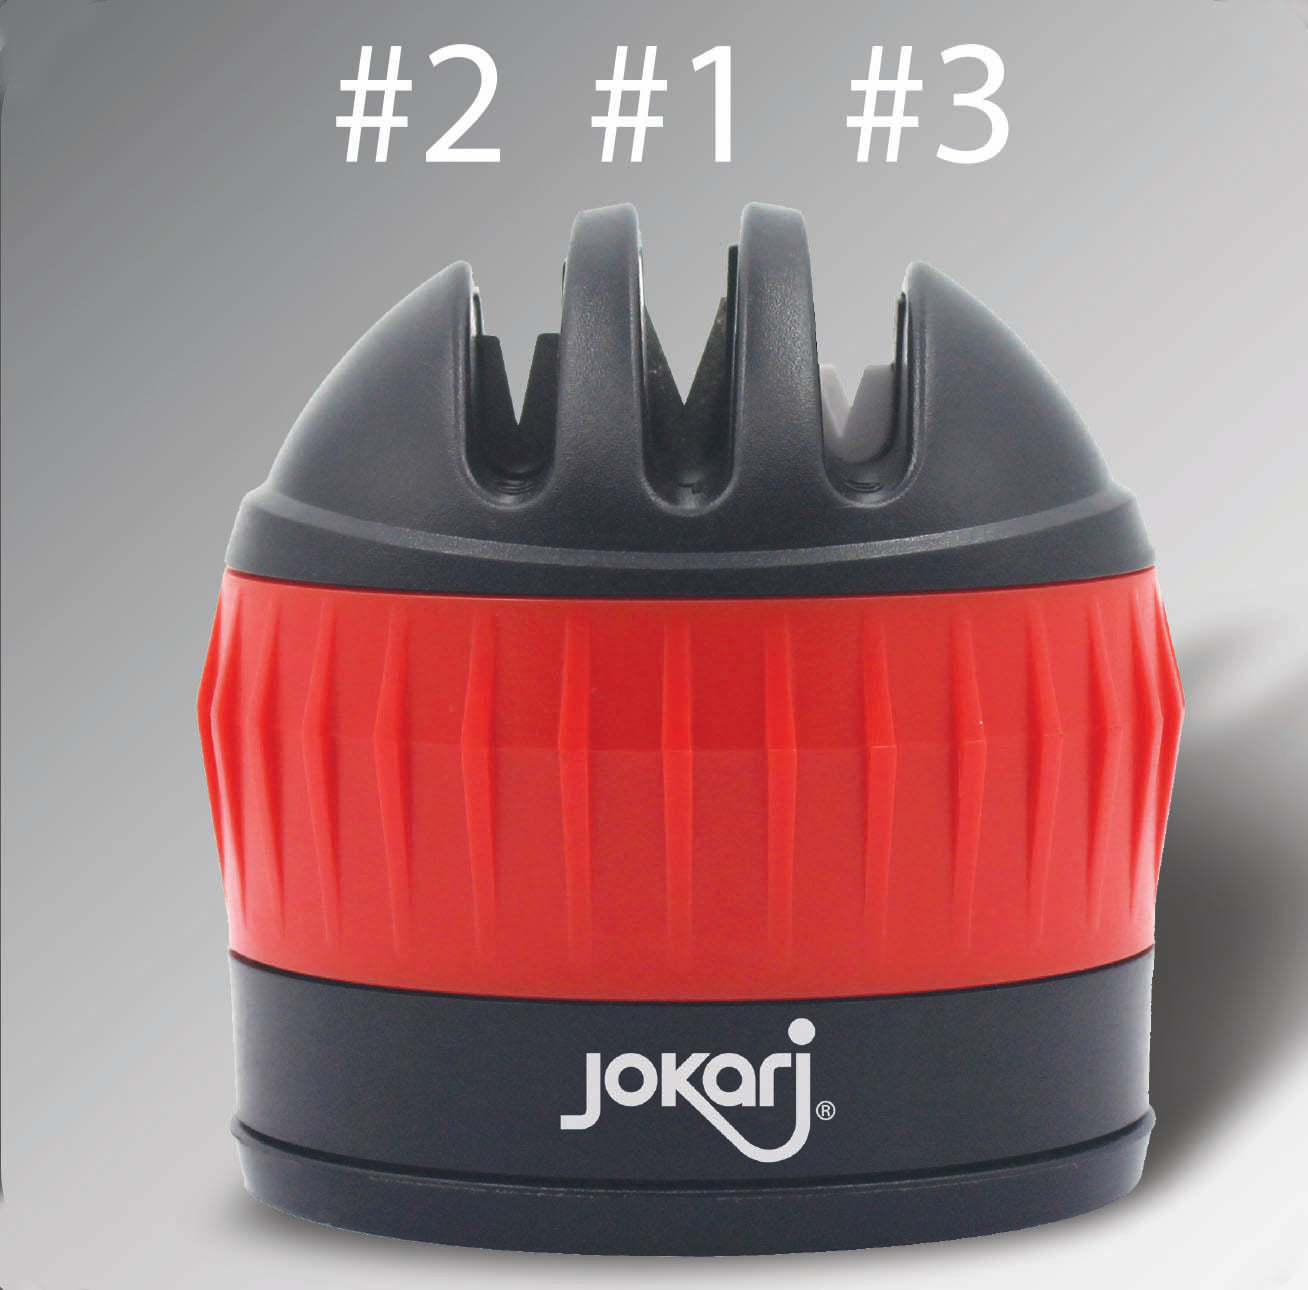 Jokari 05021 - Knife Sharpener - Easy to Use Knife Block - Keeps Knives  Sharp